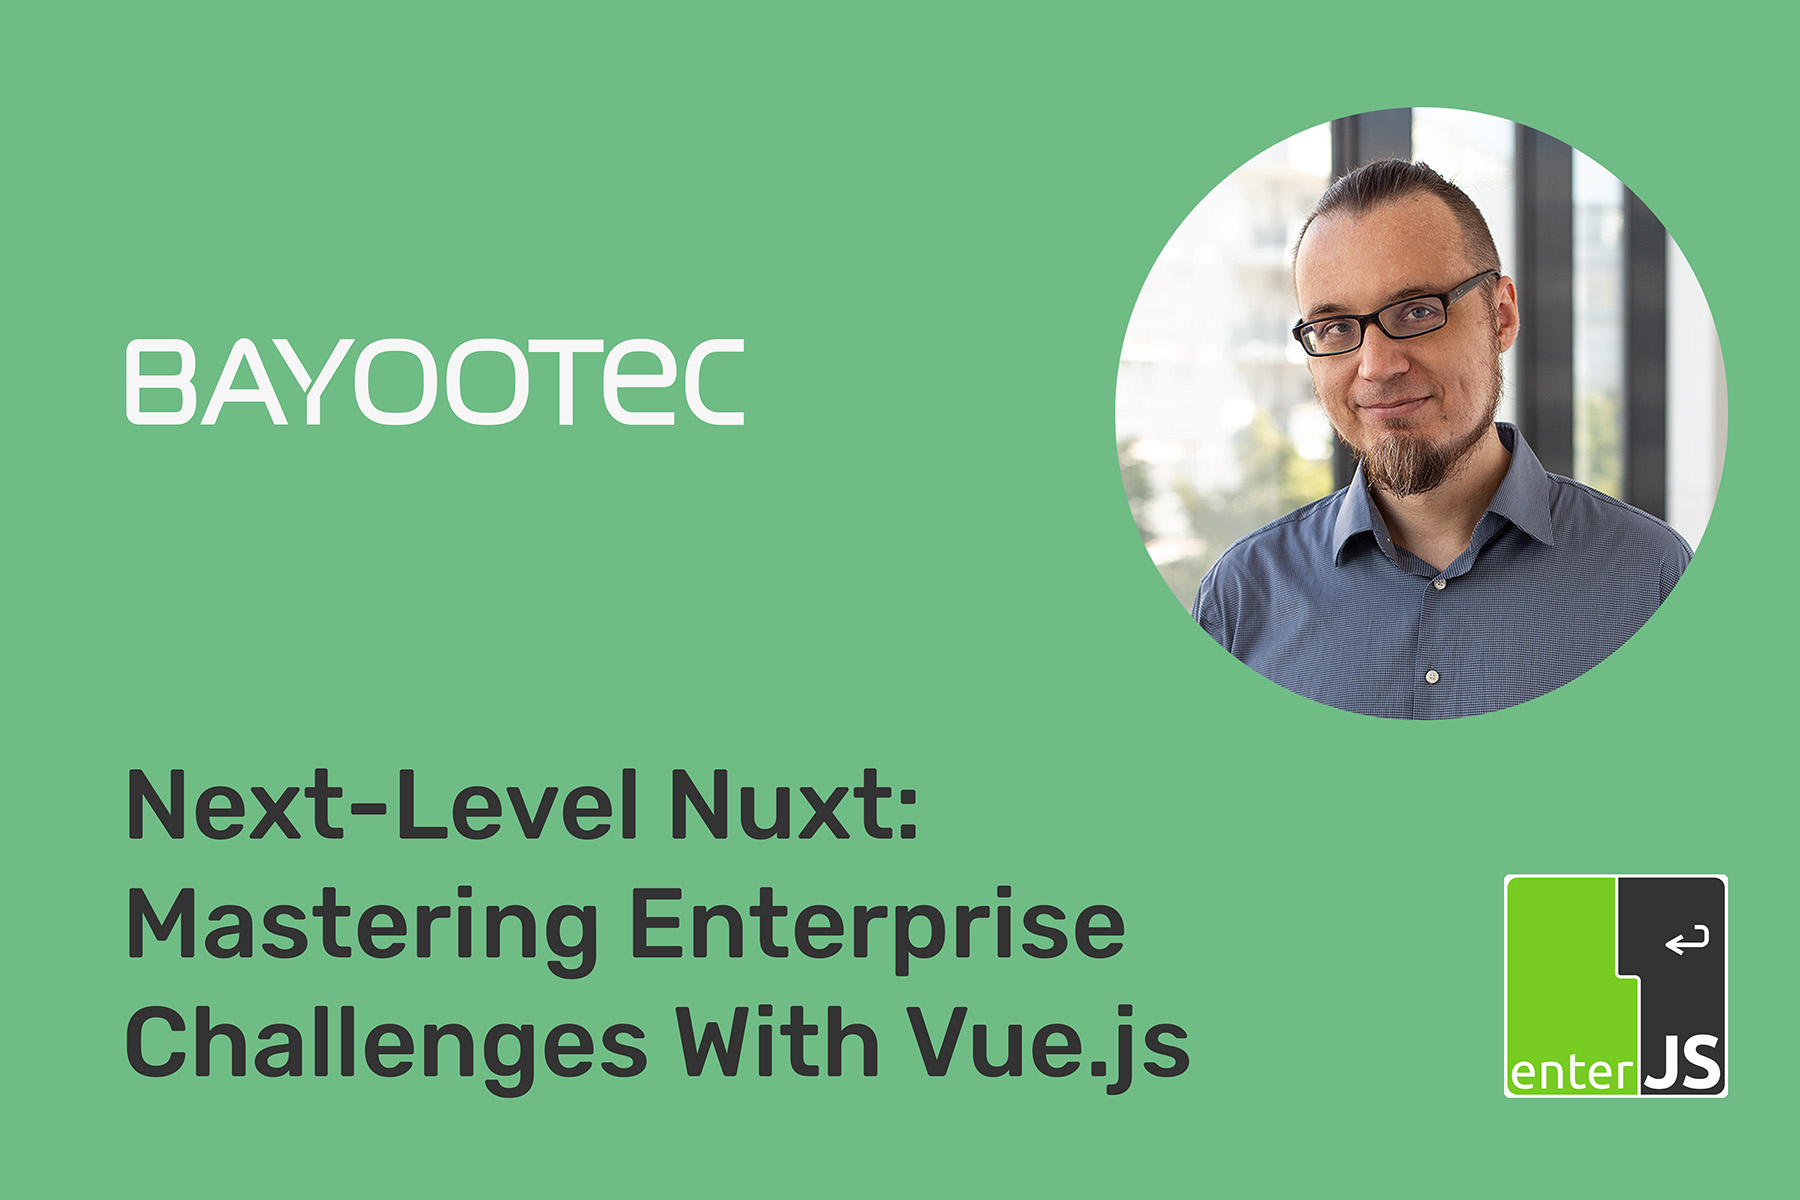 BAYOOTEC @Enter JS Konferenz - Mastering Enterprise Challenges with Vue